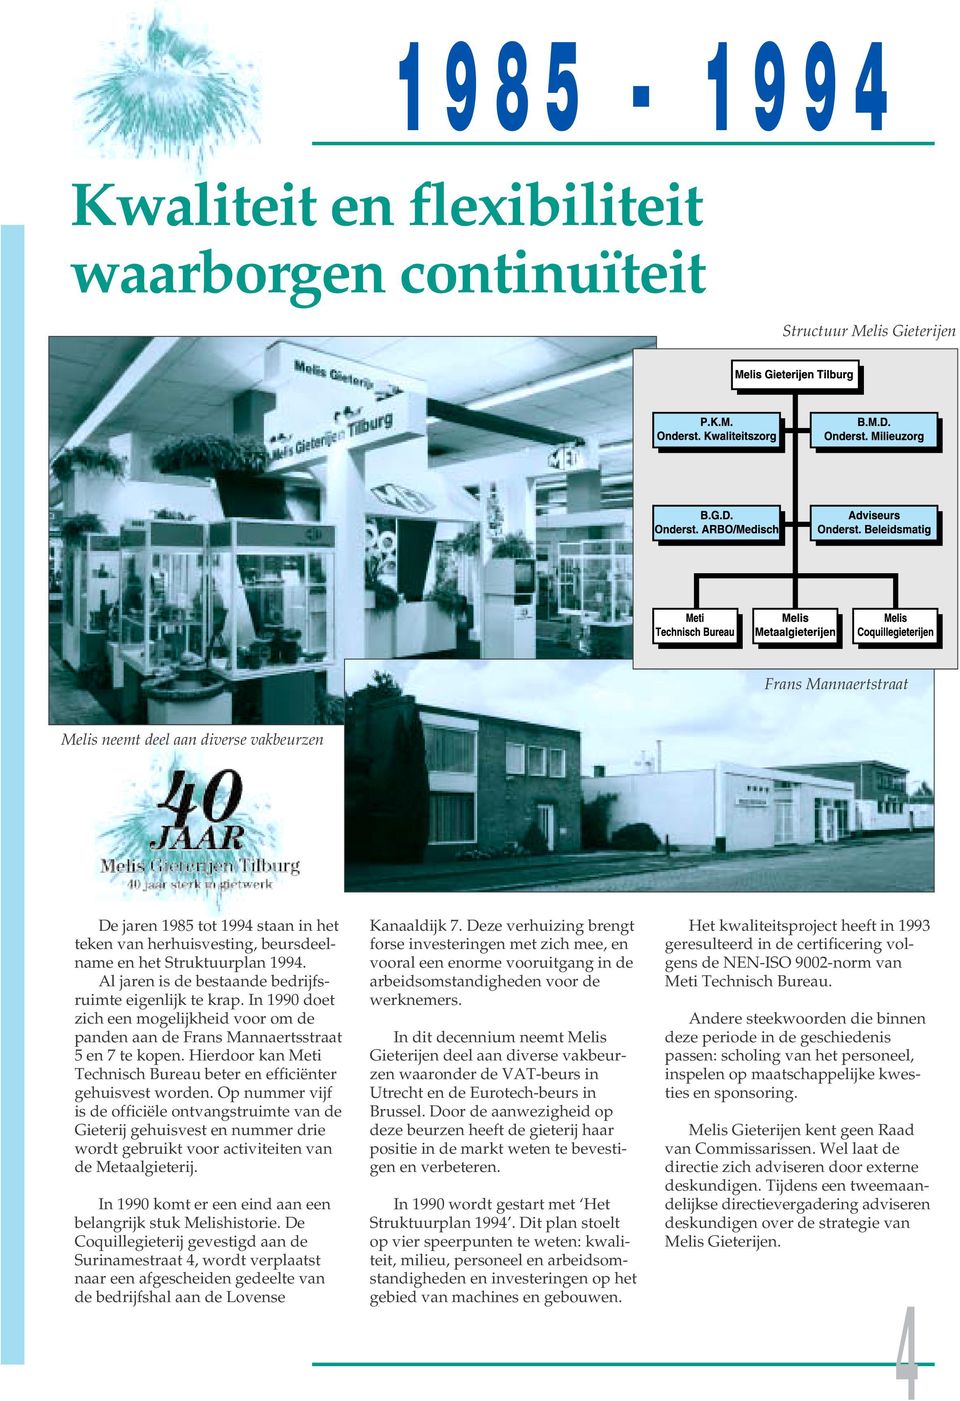 In 1990 doet zich een mogelijkheid voor om de panden aan de Frans Mannaertsstraat 5 en 7 te kopen. Hierdoor kan Meti Technisch Bureau beter en efficiënter gehuisvest worden.